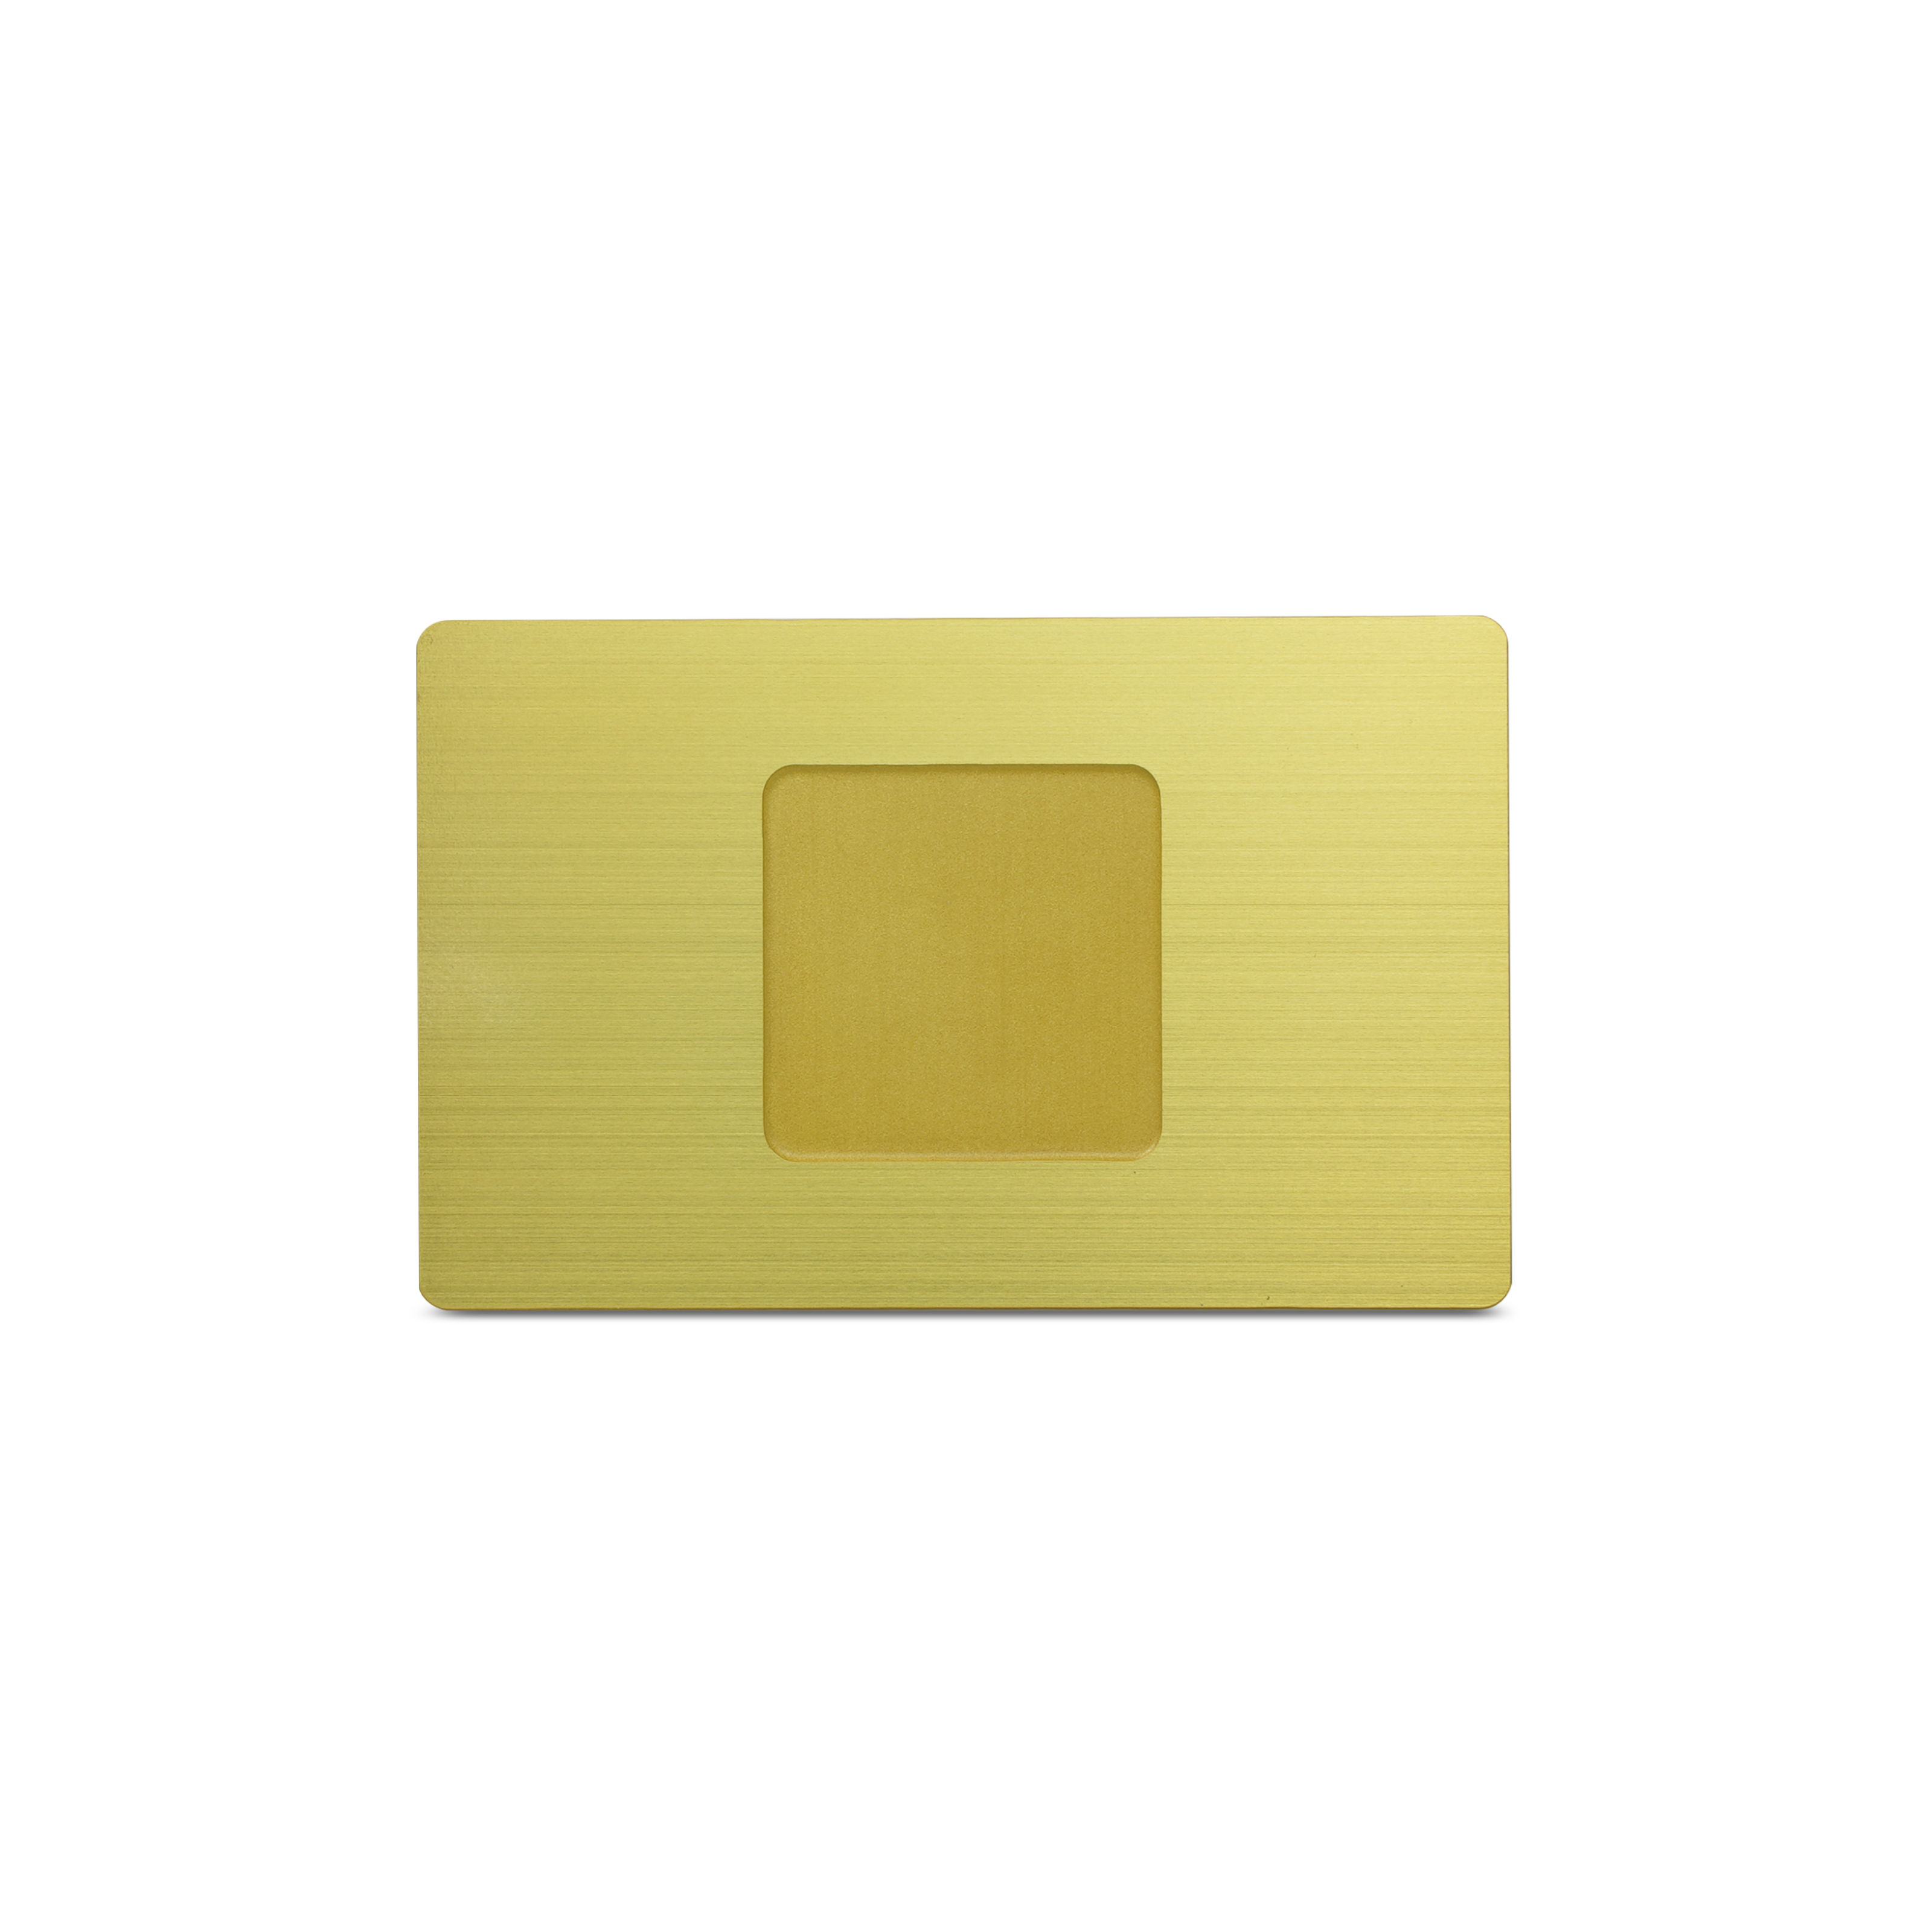 Rückseite der Metallkarte in Gold mit Einkerbung für den NFC Sticker